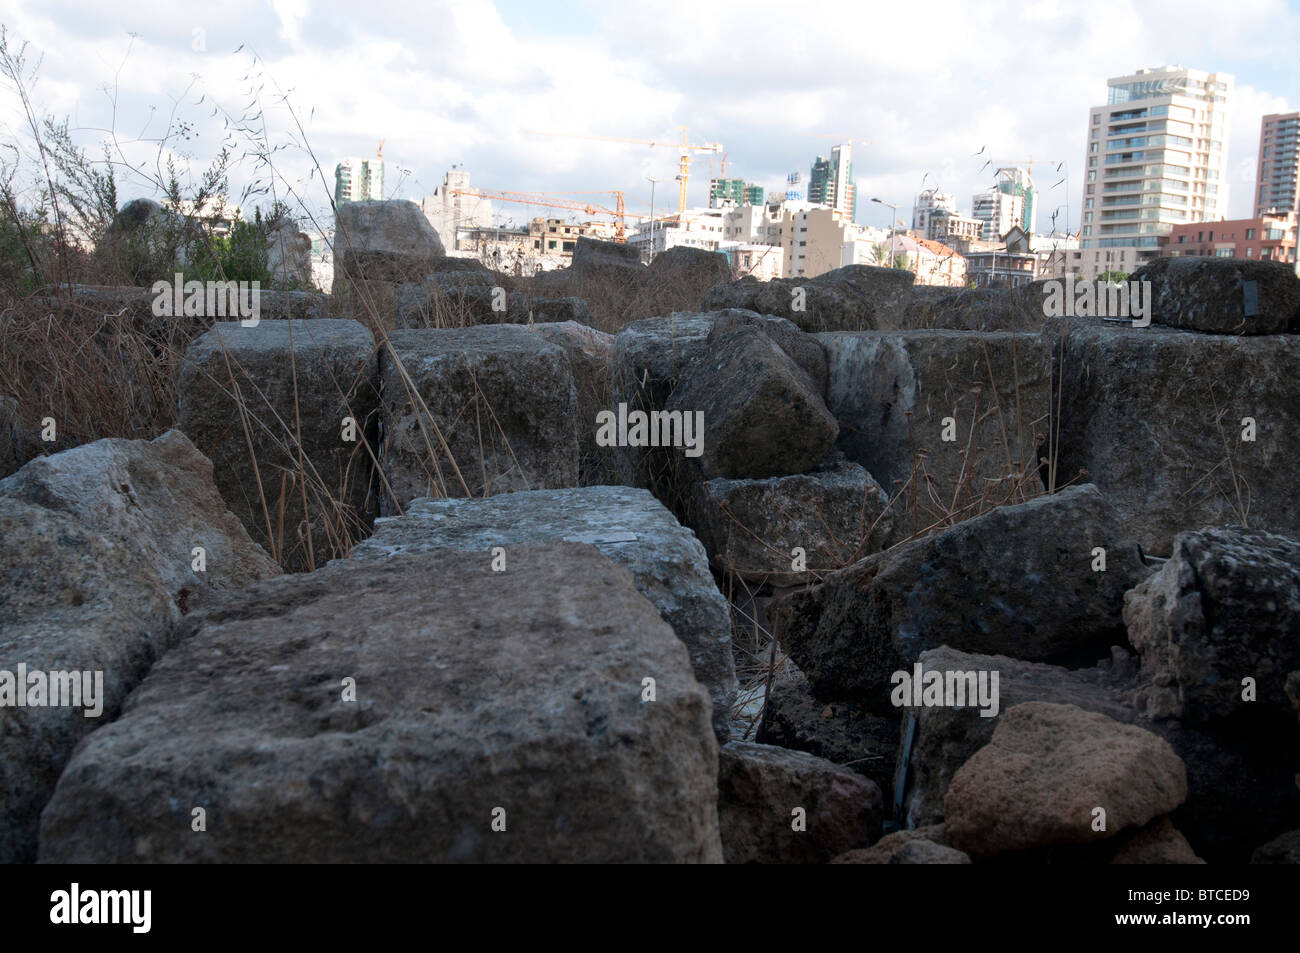 Liban, Beyrouth . Le rêve urbain. Des vestiges romains et de nouveaux édifices de la ville. Banque D'Images